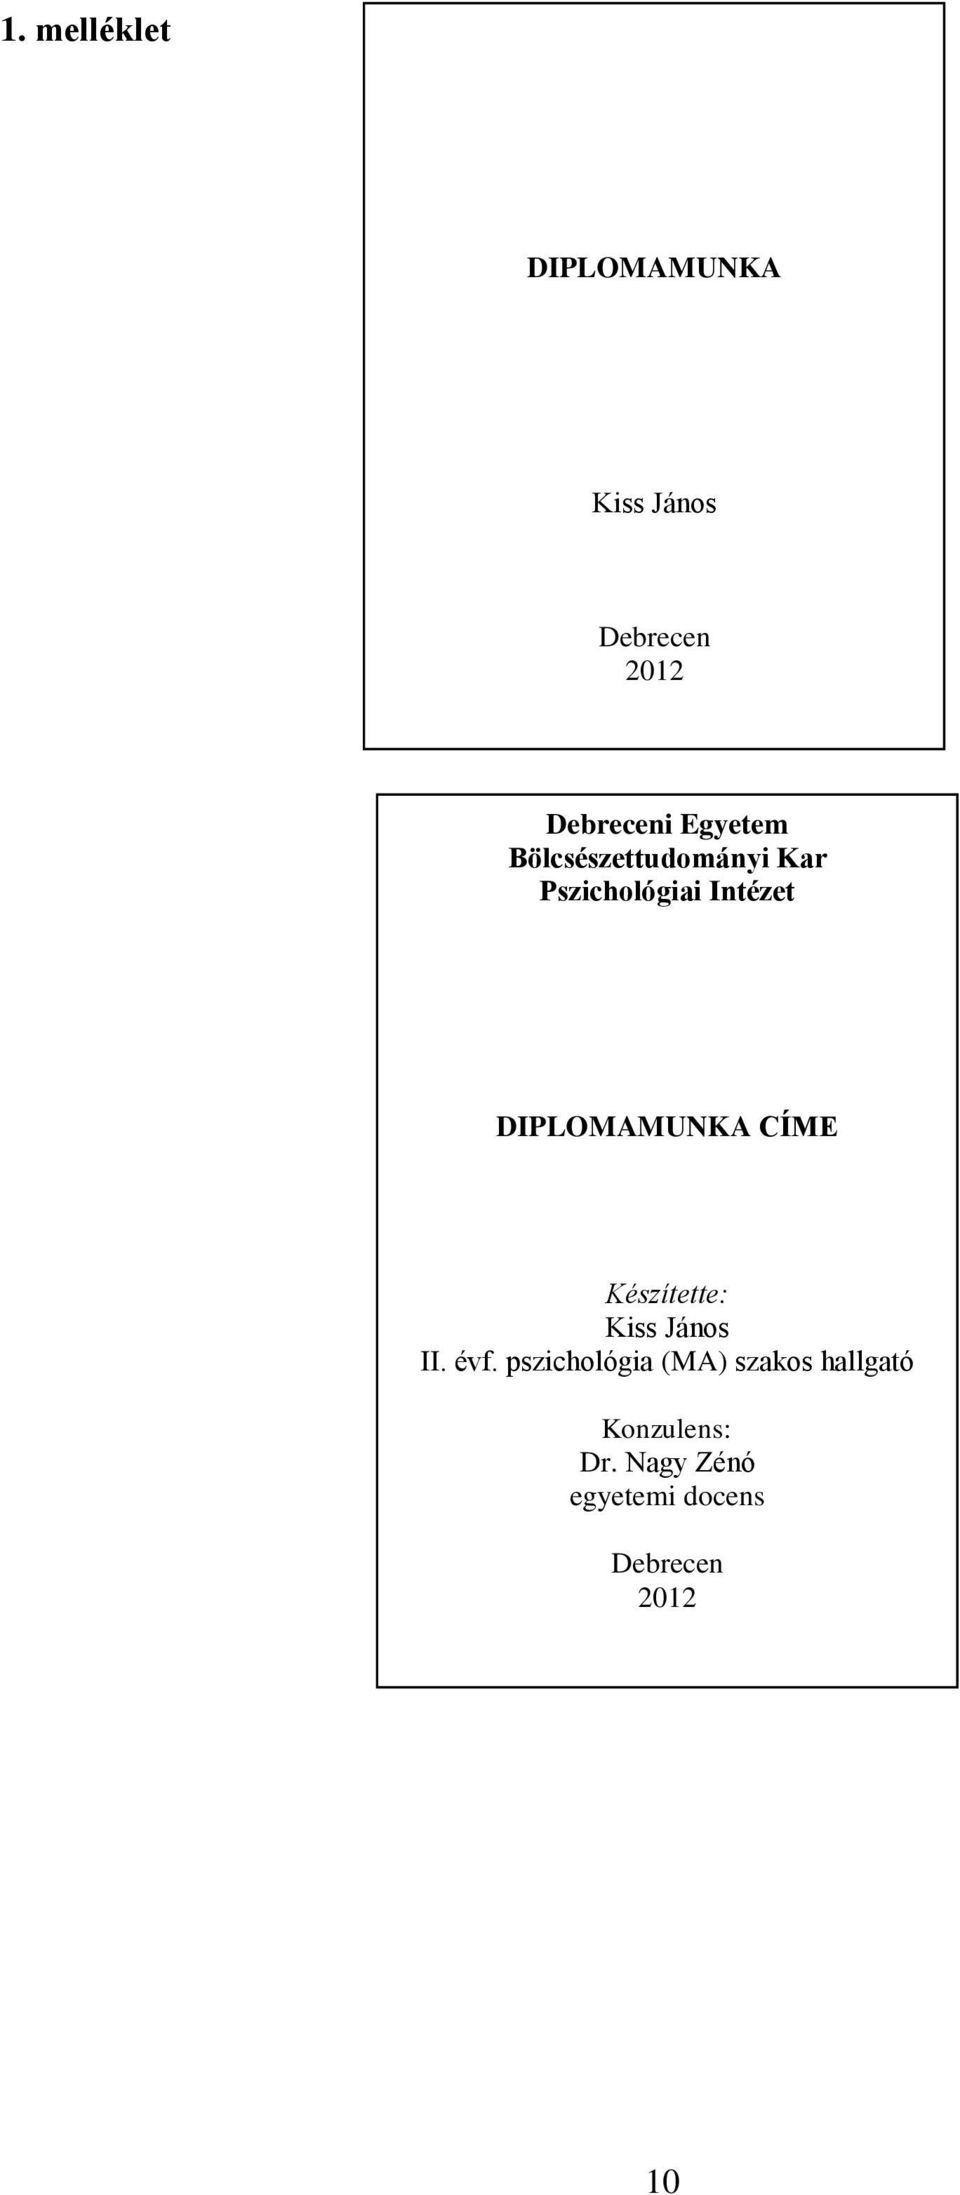 DIPLOMAMUNKA. (diplomadolgozat, szakdolgozat) tartalmi és formai  követelményei, valamint készítésének, bírálatának, védésének rendje - PDF  Ingyenes letöltés